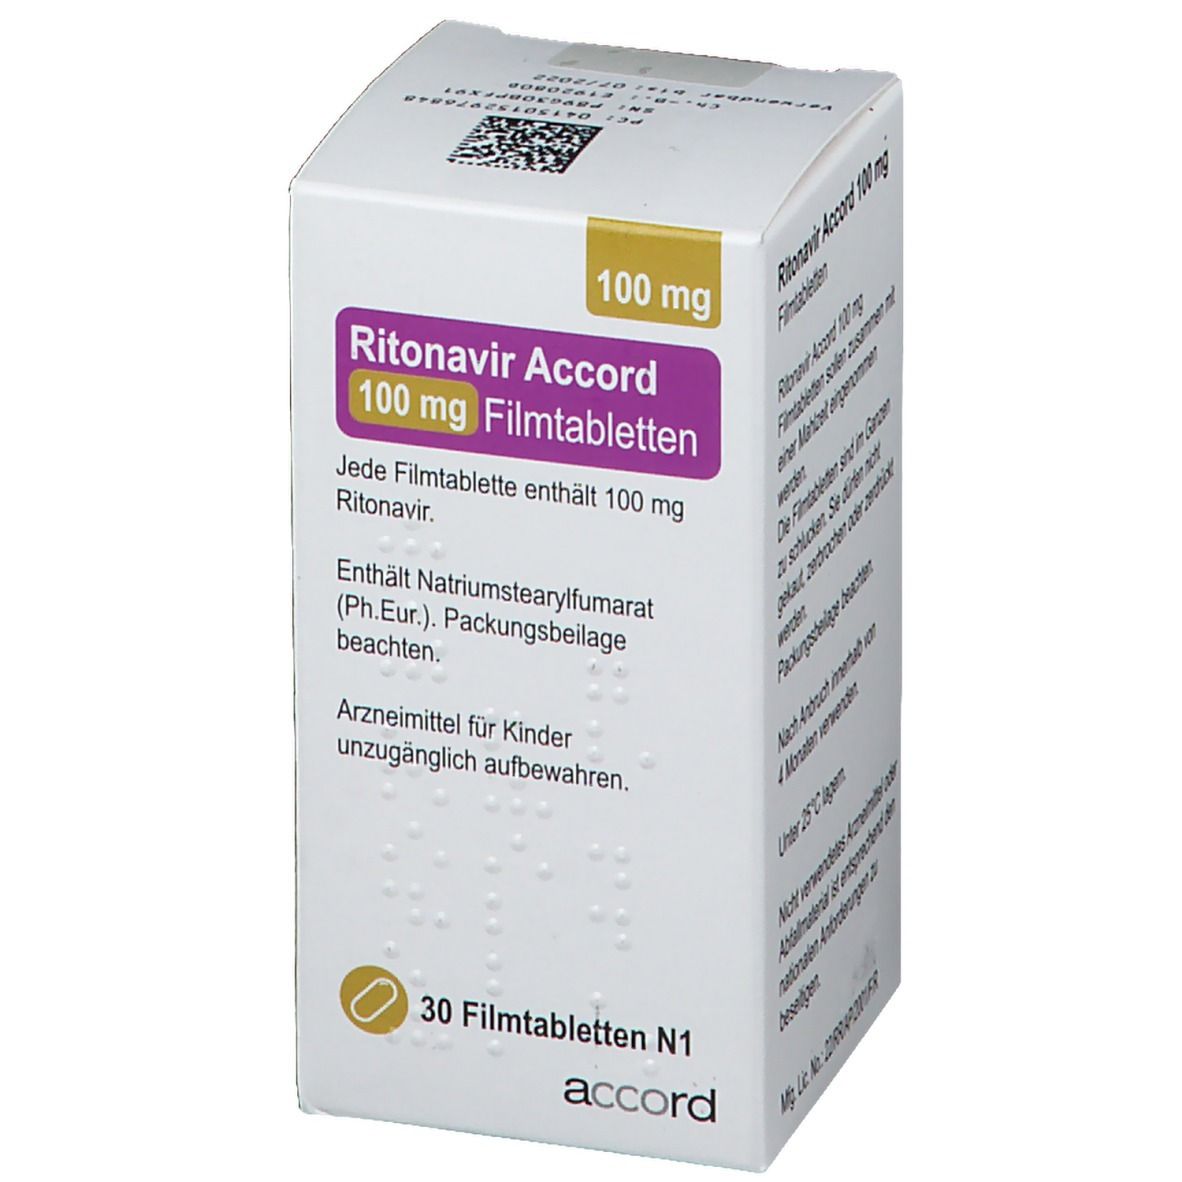 Ritonavir Accord 100 mg